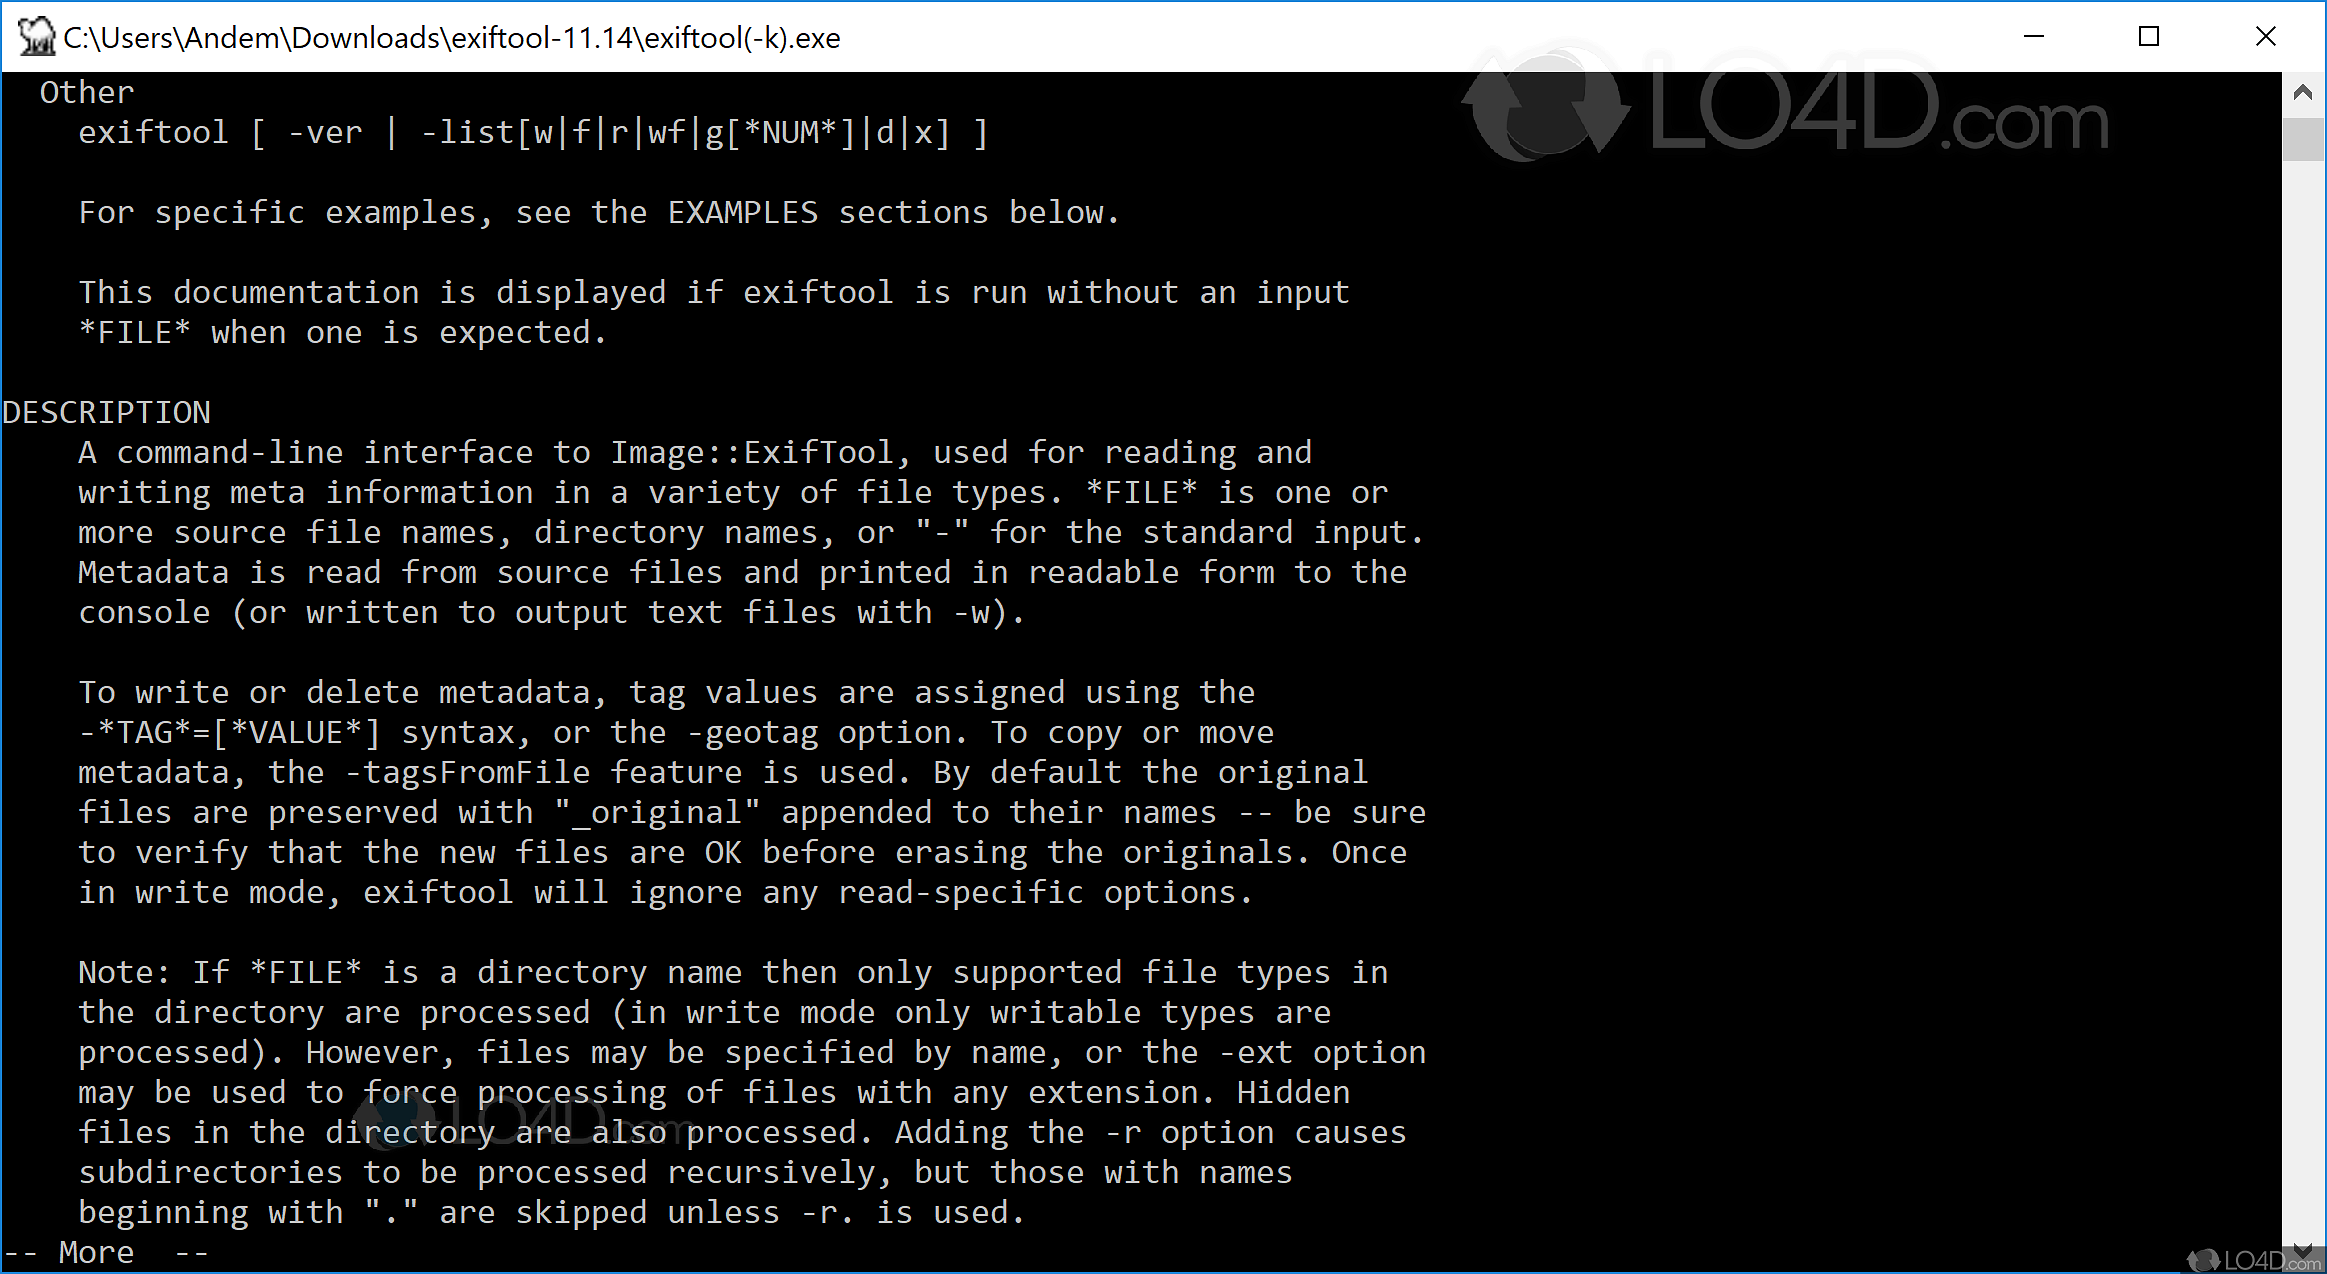 instaling ExifTool 12.67